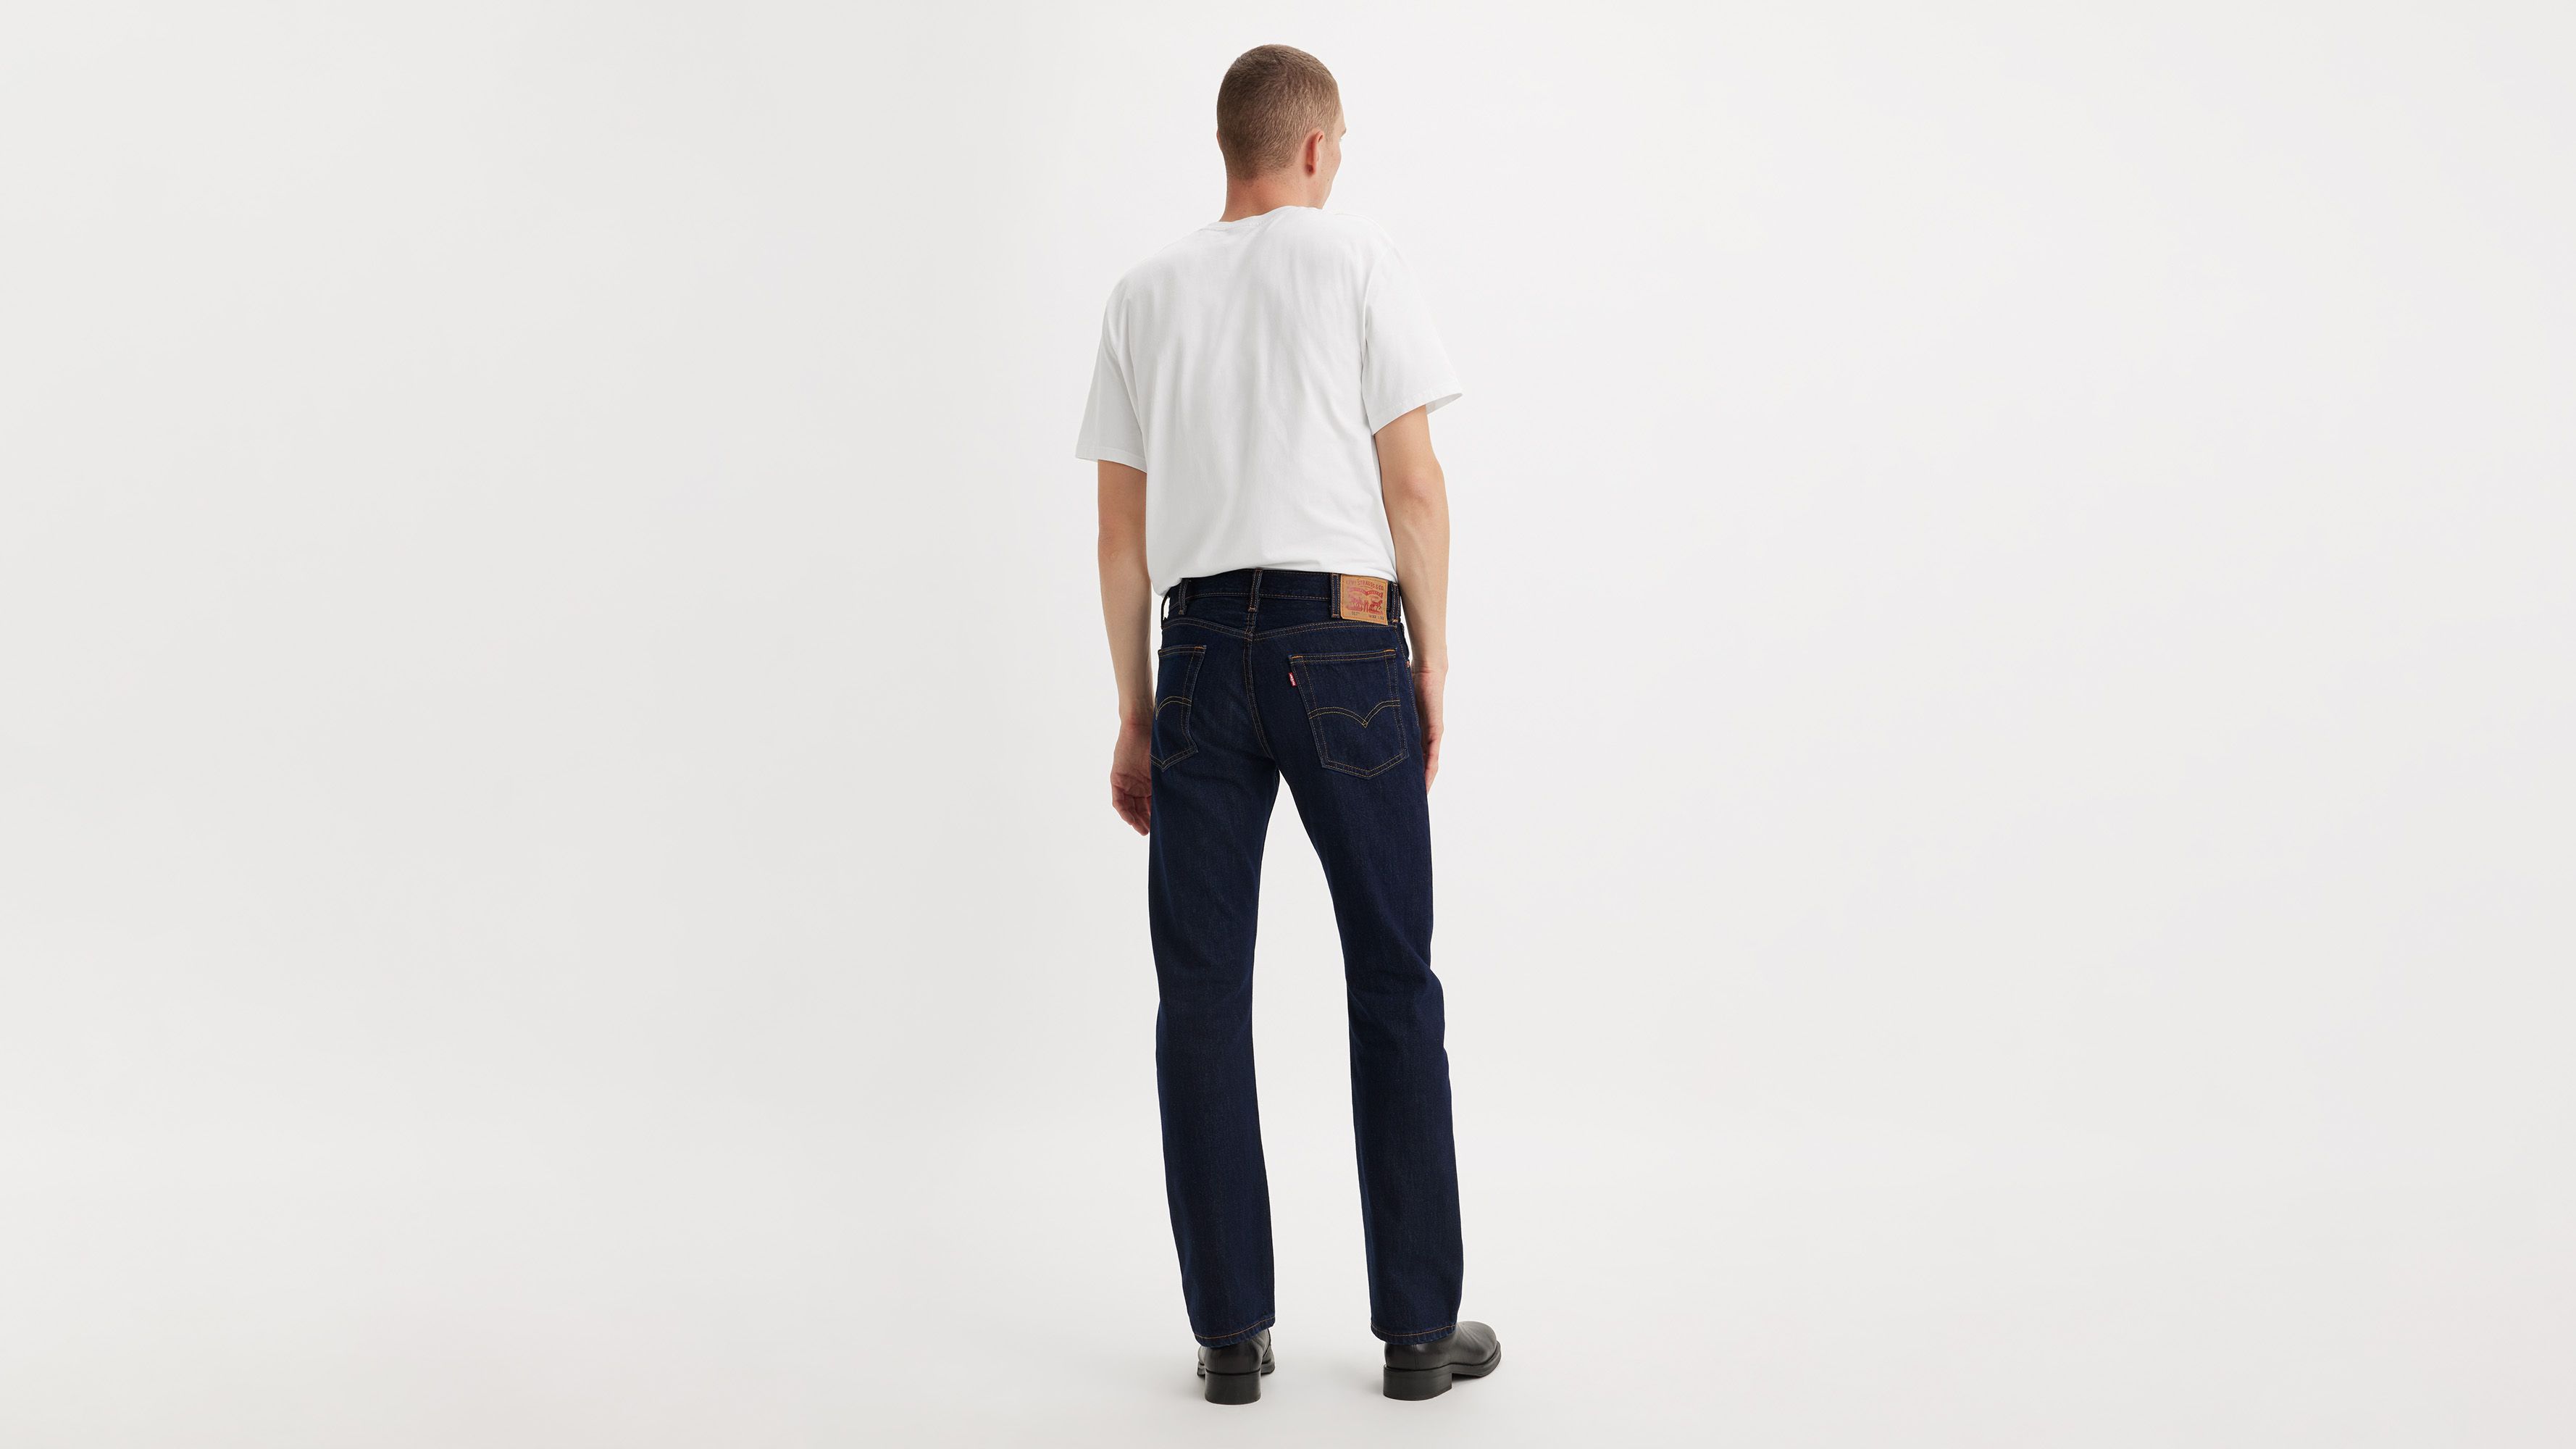 jeans levis 517